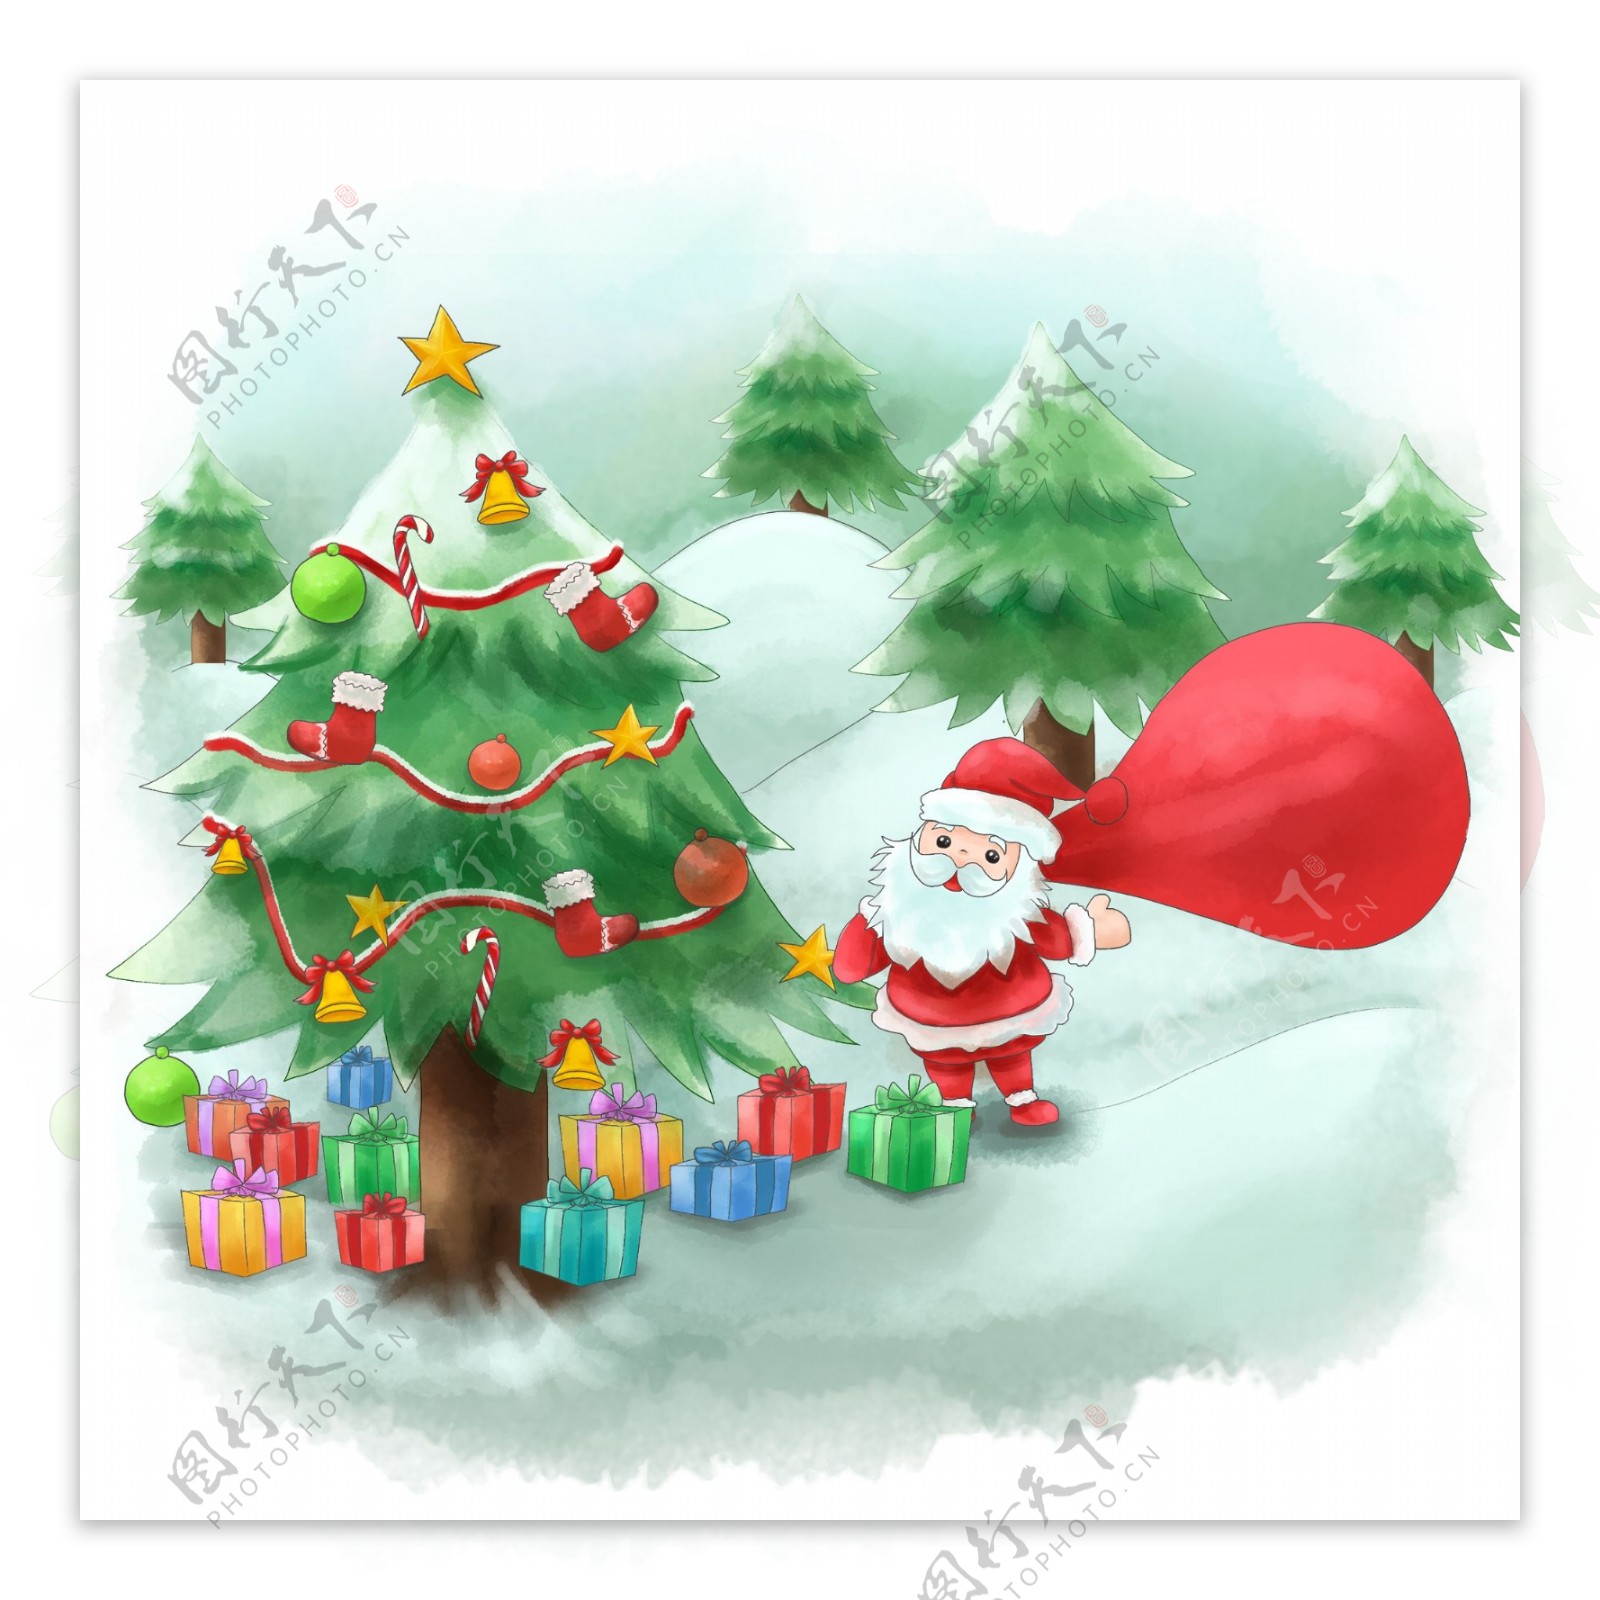 壁纸 : 插图, 月亮, 飞行, 雪人, 圣诞树, 假日, 新年, 驯鹿, 圣诞老人, 礼物, 圣诞装饰, 题词, 雪橇 1600x1180 ...